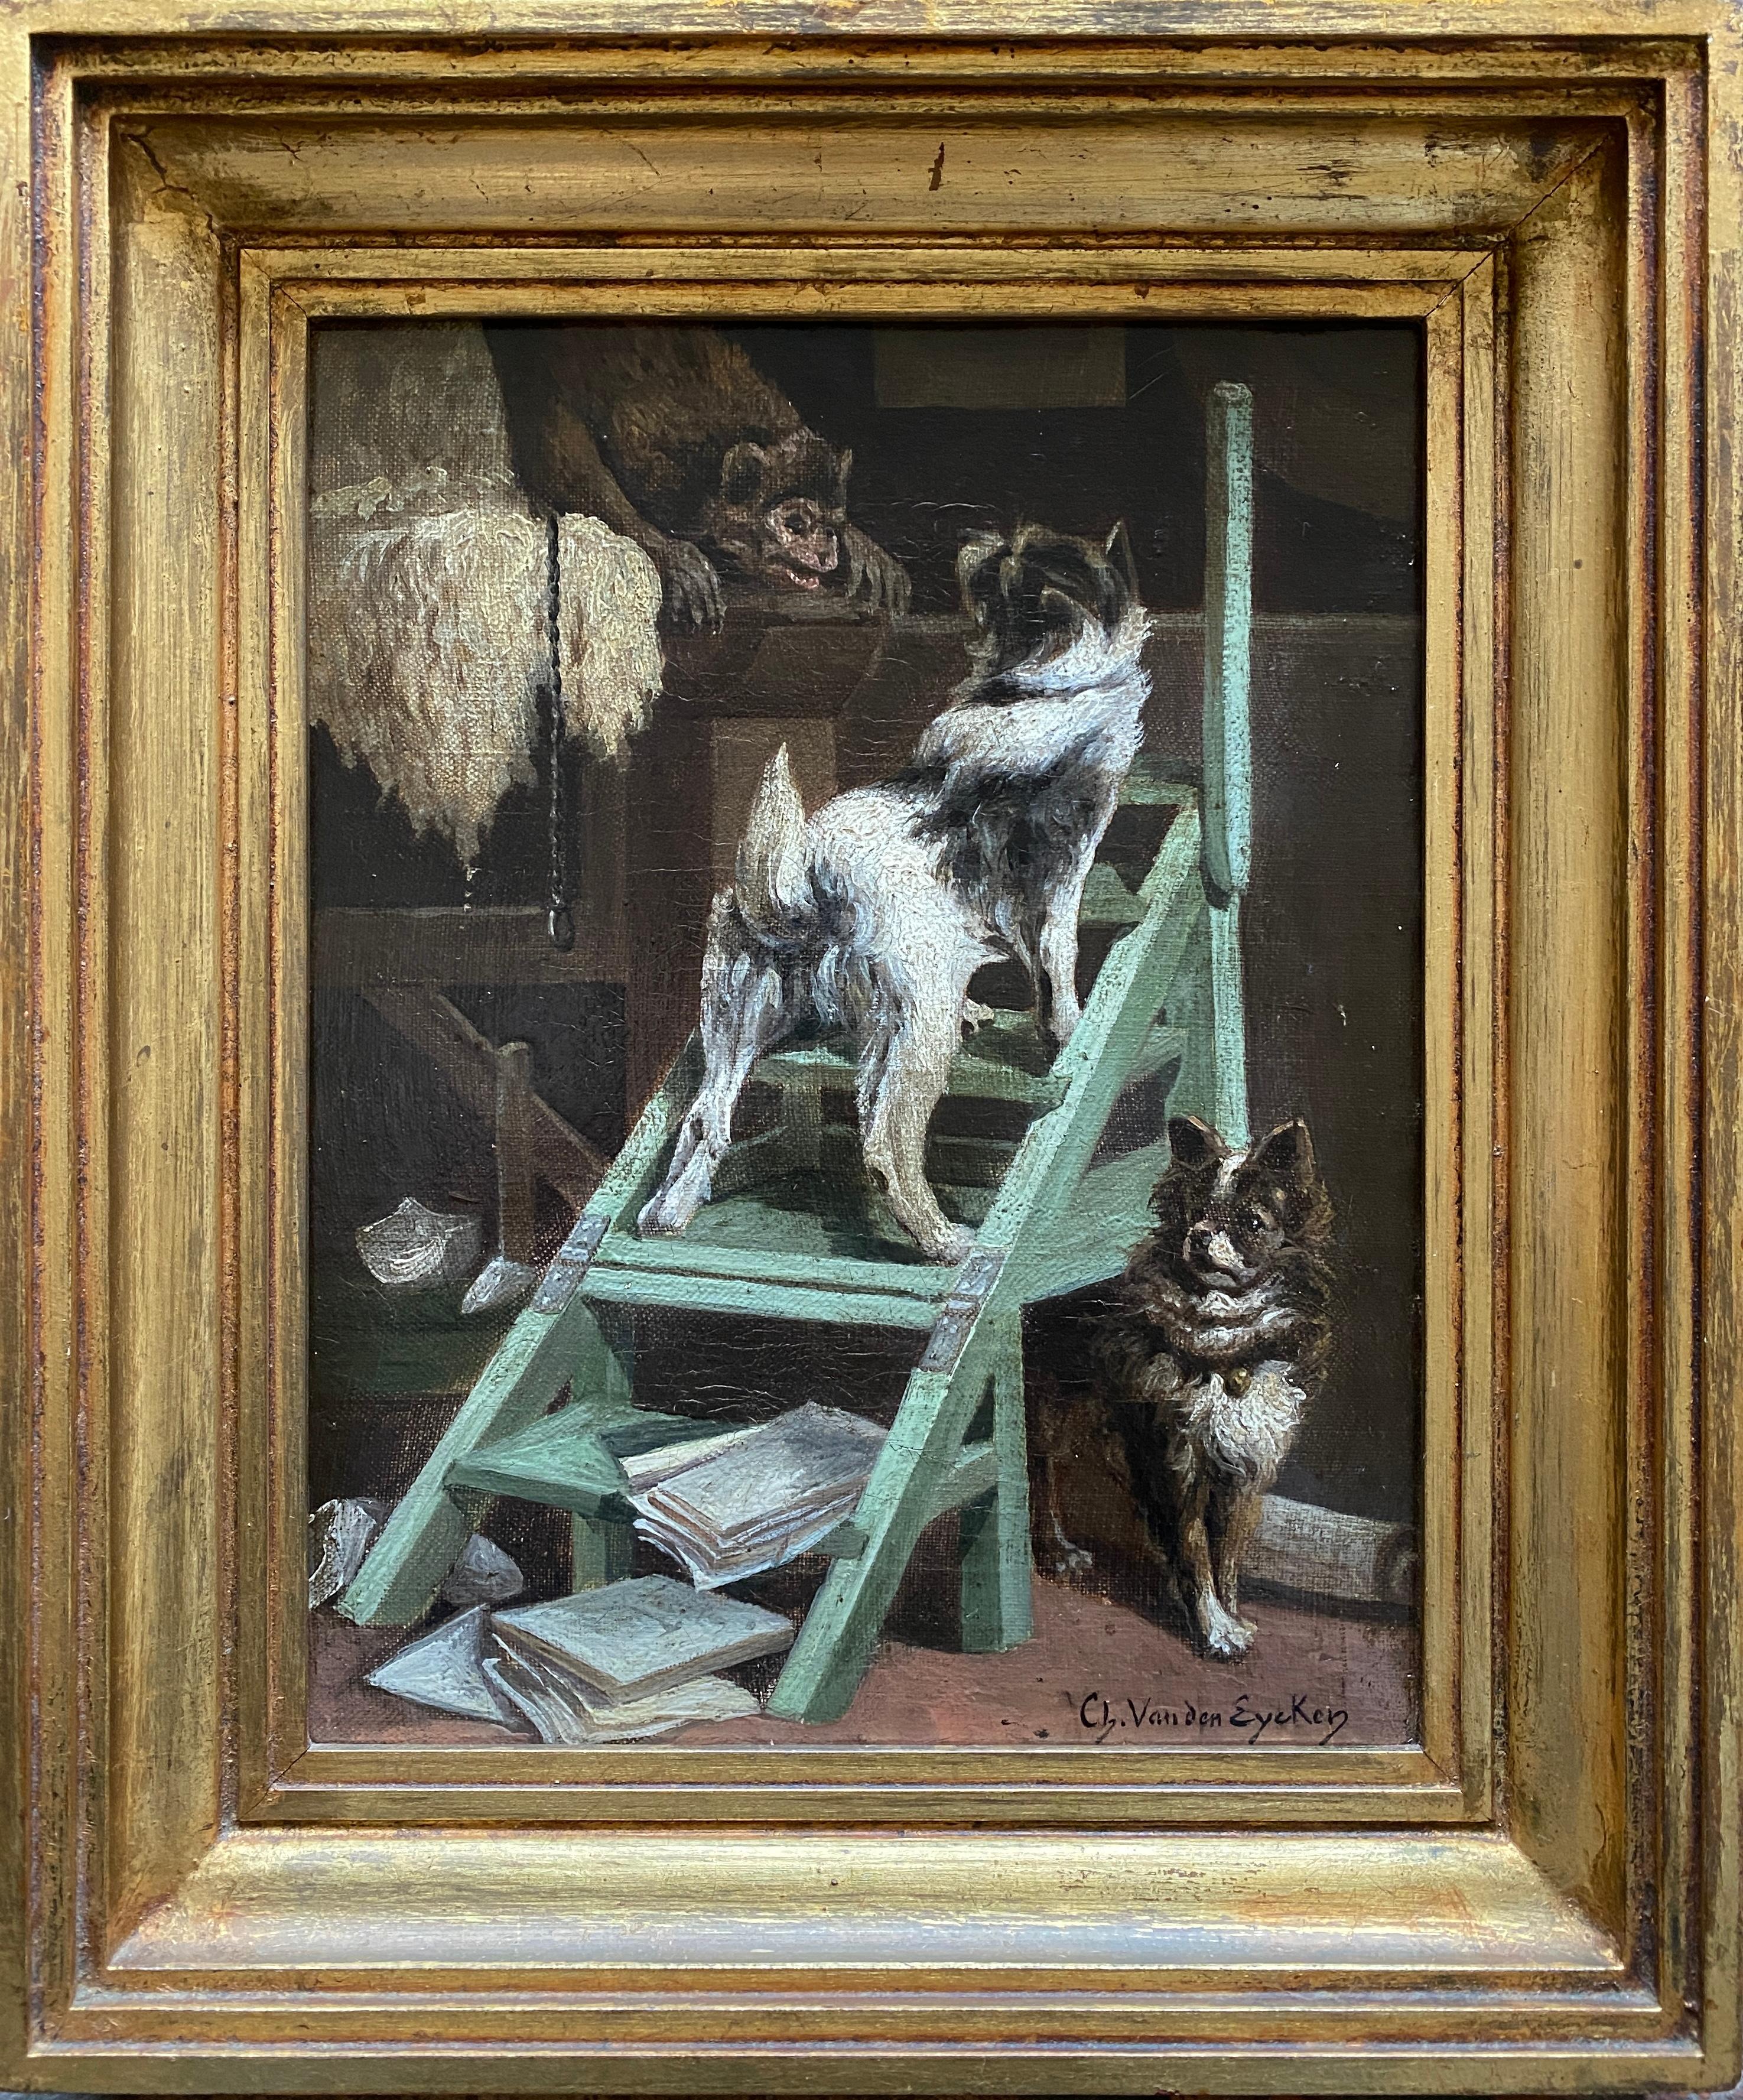 Confrontation, Charles Van Den Eycken, Brussels 1859 – 1923, Belgian Painter